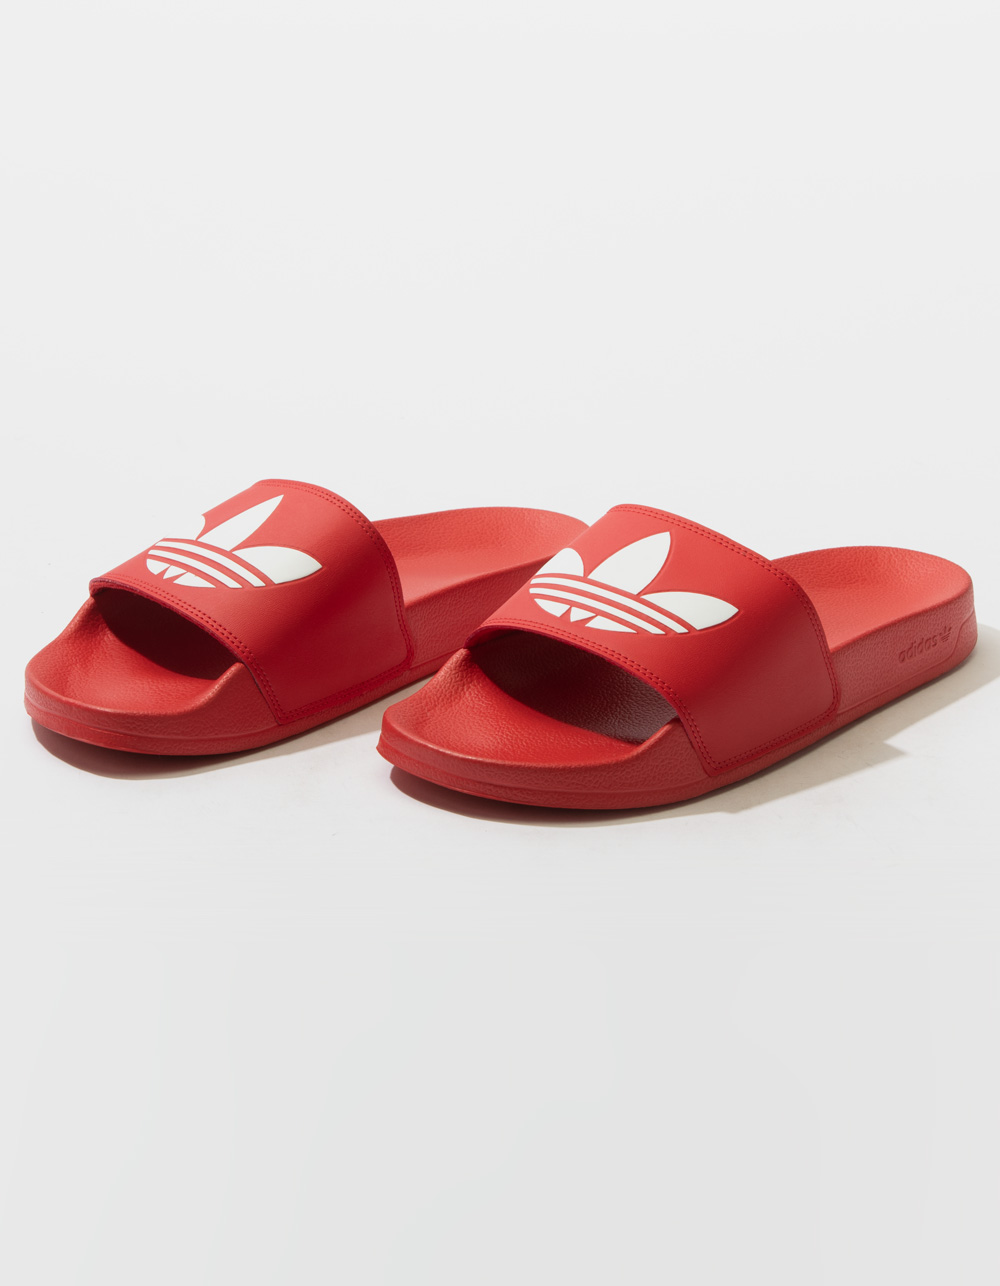 ADIDAS Adilette Lite Mens Slide Sandals - RED COMBO | Tillys